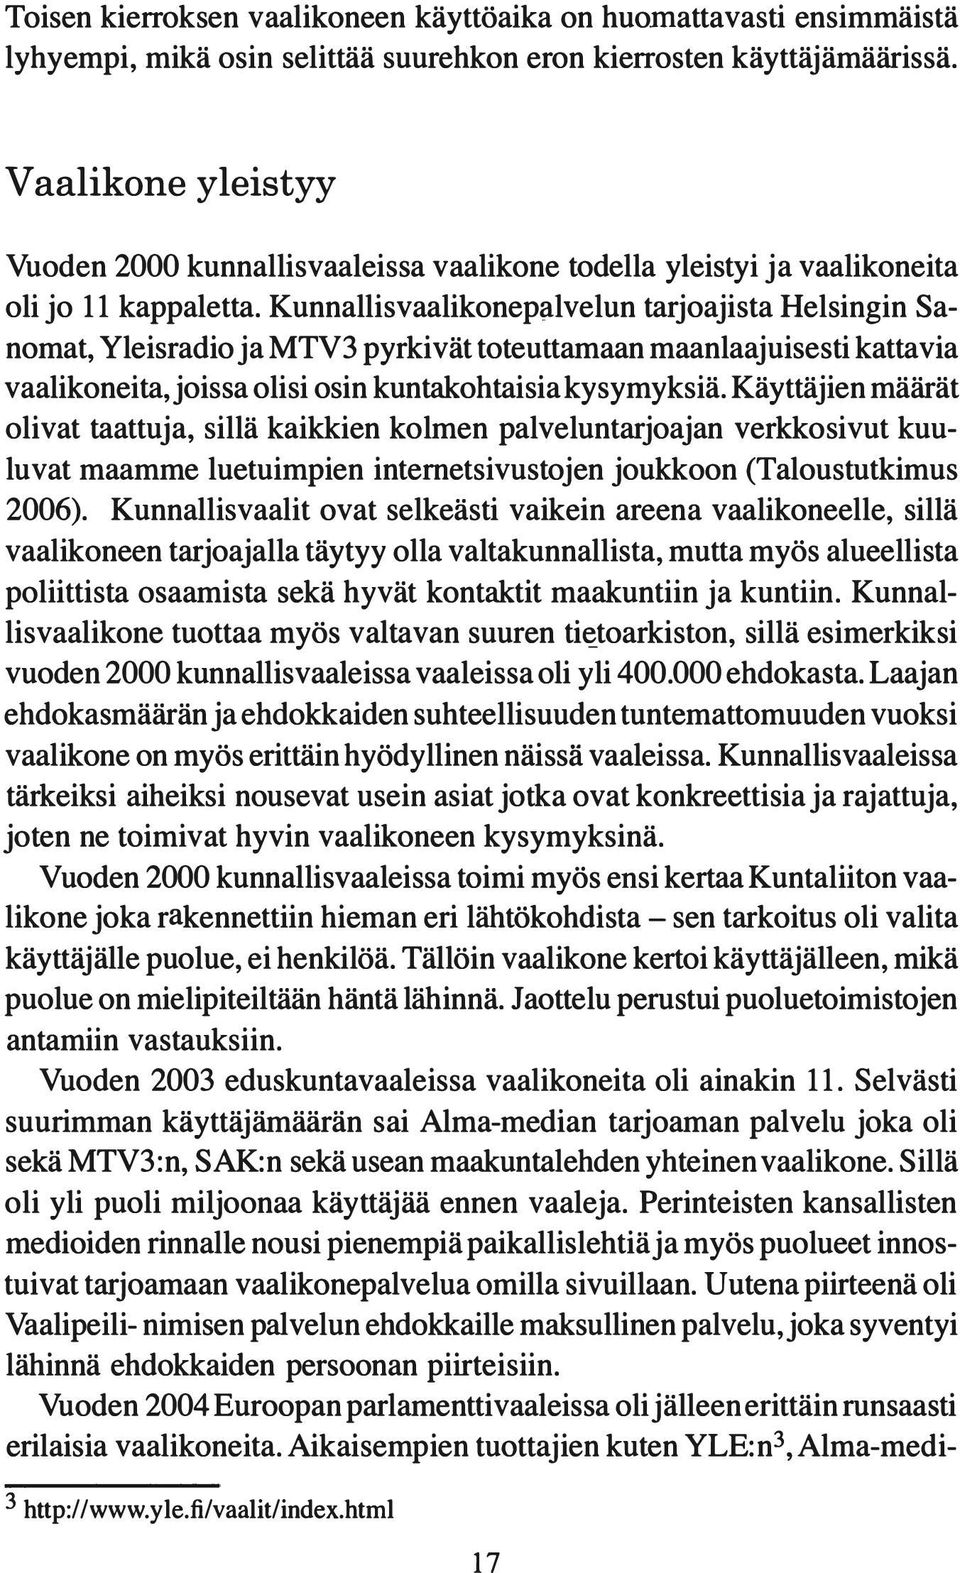 Kunnallisvaalikonep lvelun tarjoajista Helsingin Sanomat, Yleisradio ja MTV 3 pyrkivät toteuttamaan maanlaajuisesti kattavia vaalikoneita, joissa olisi osin kuntakohtaisia kysymyksiä.